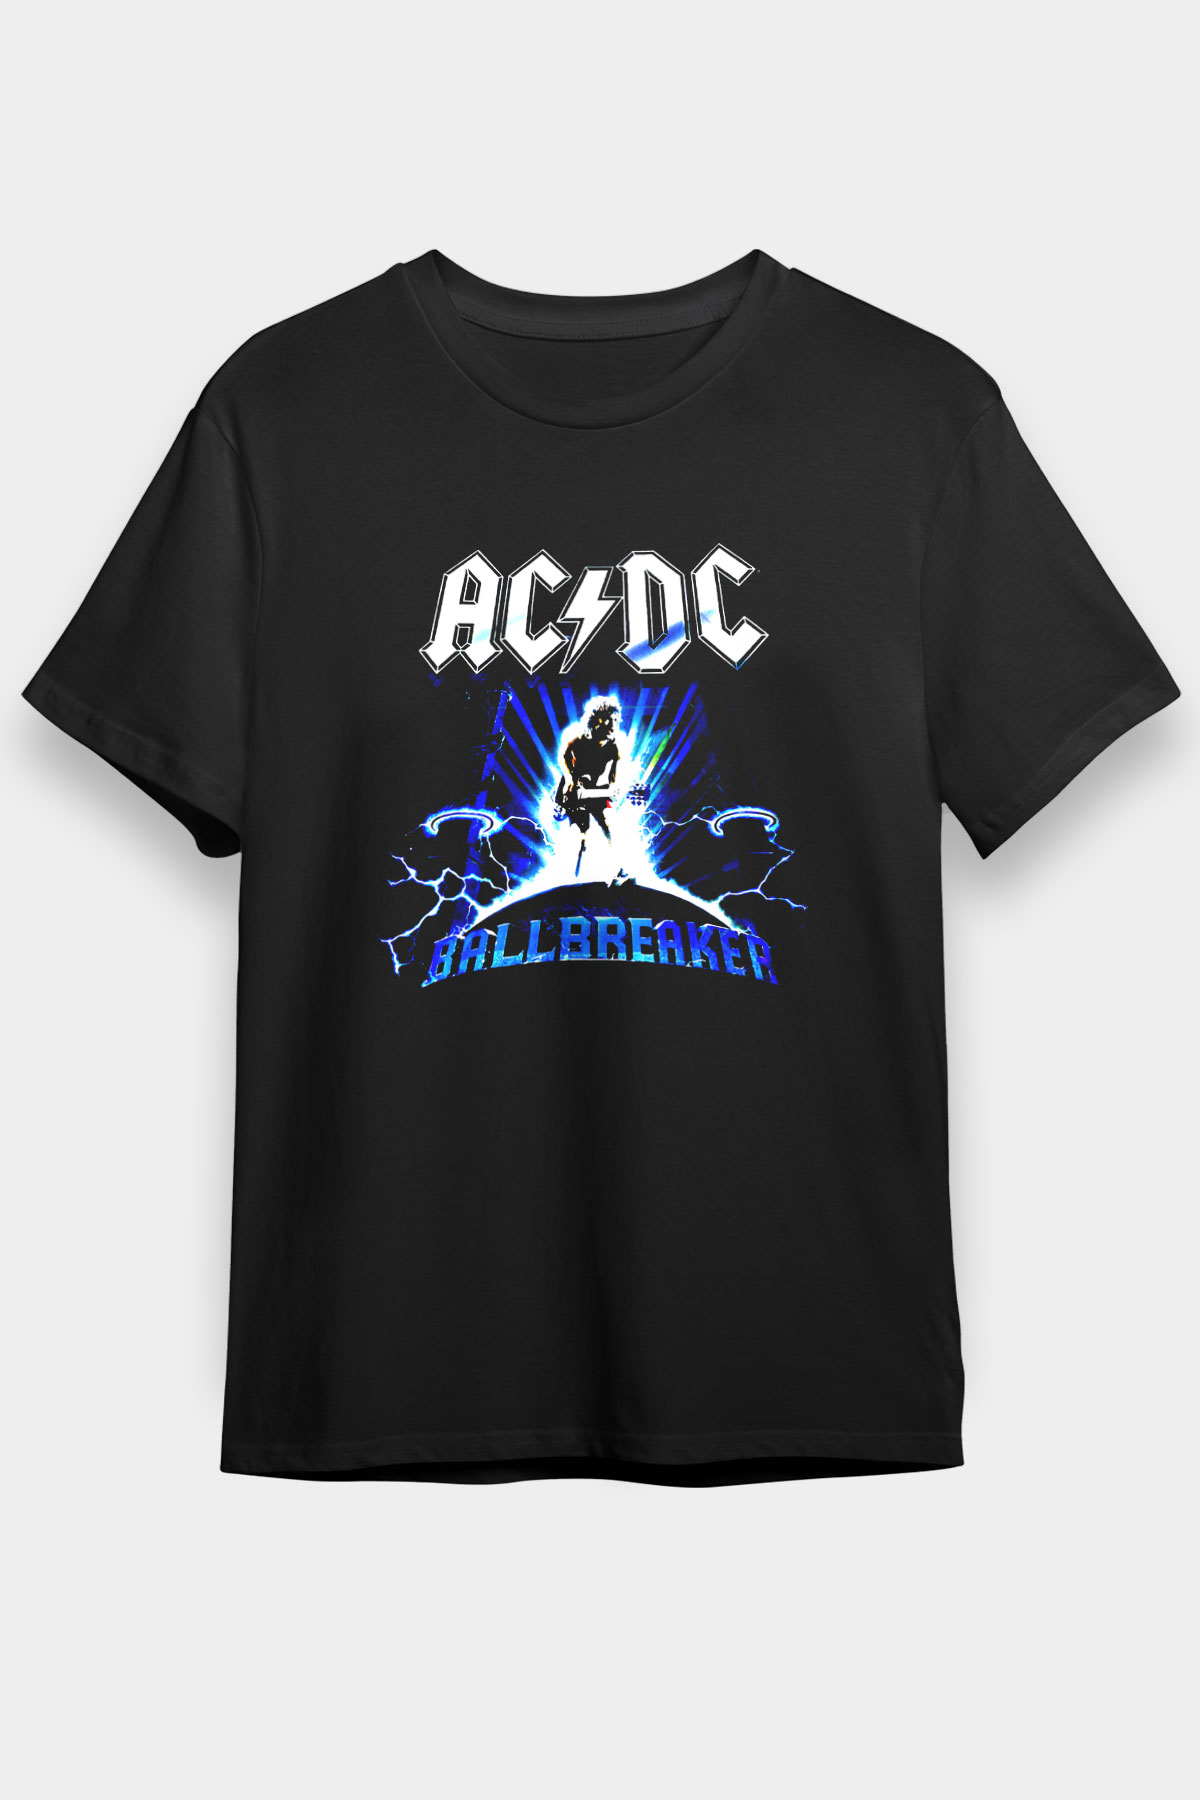 AC DC,Ballbreaker,Black Unisex T Shirt 008